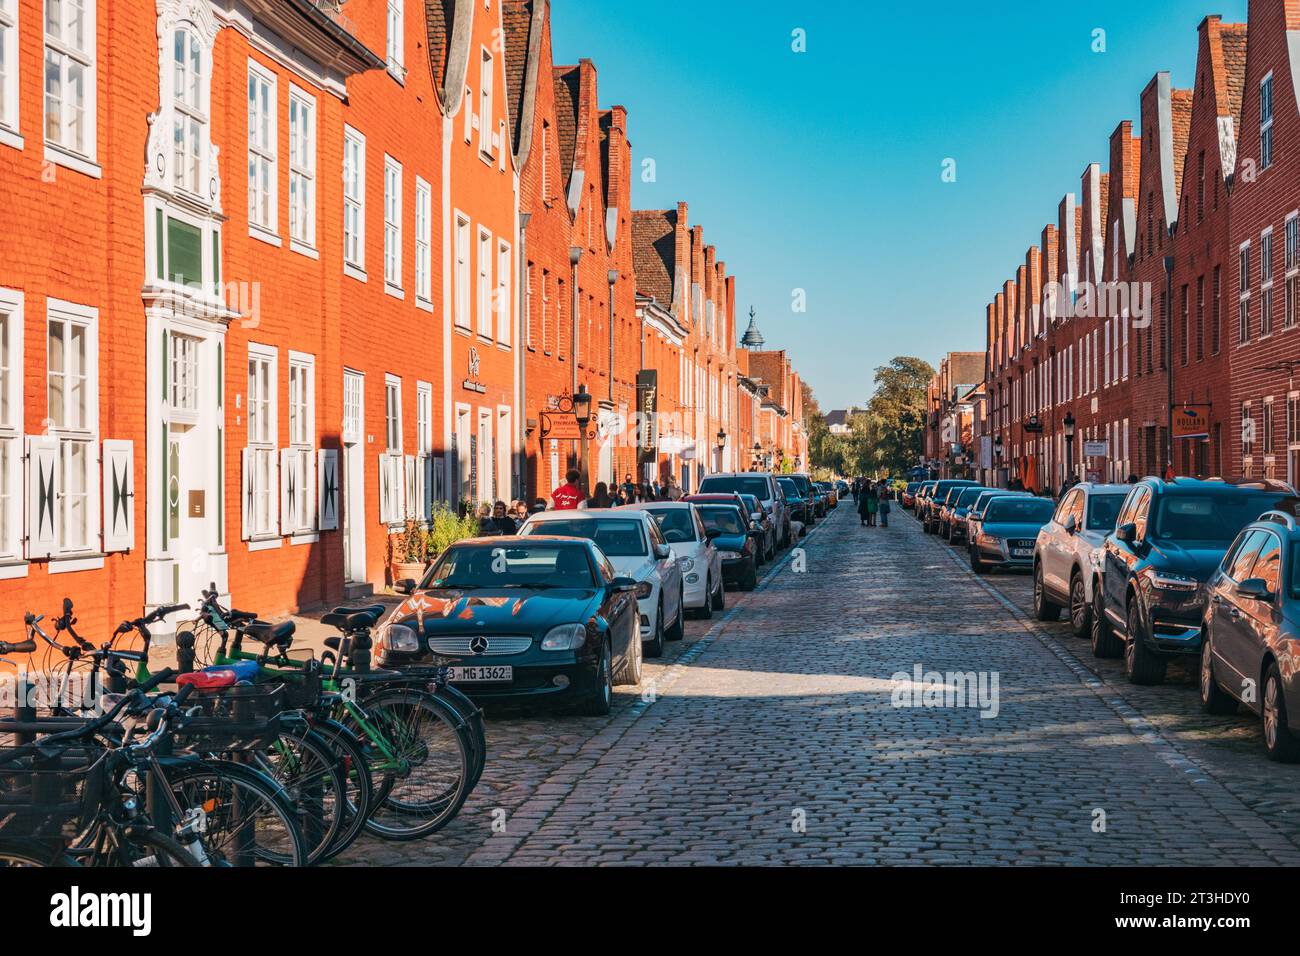 Mit Blick auf die hellen orangen Terrassenhäuser, die die Kopfsteinpflasterstraße der Mittelstraße säumen, Potsdam, Deutschland Stockfoto